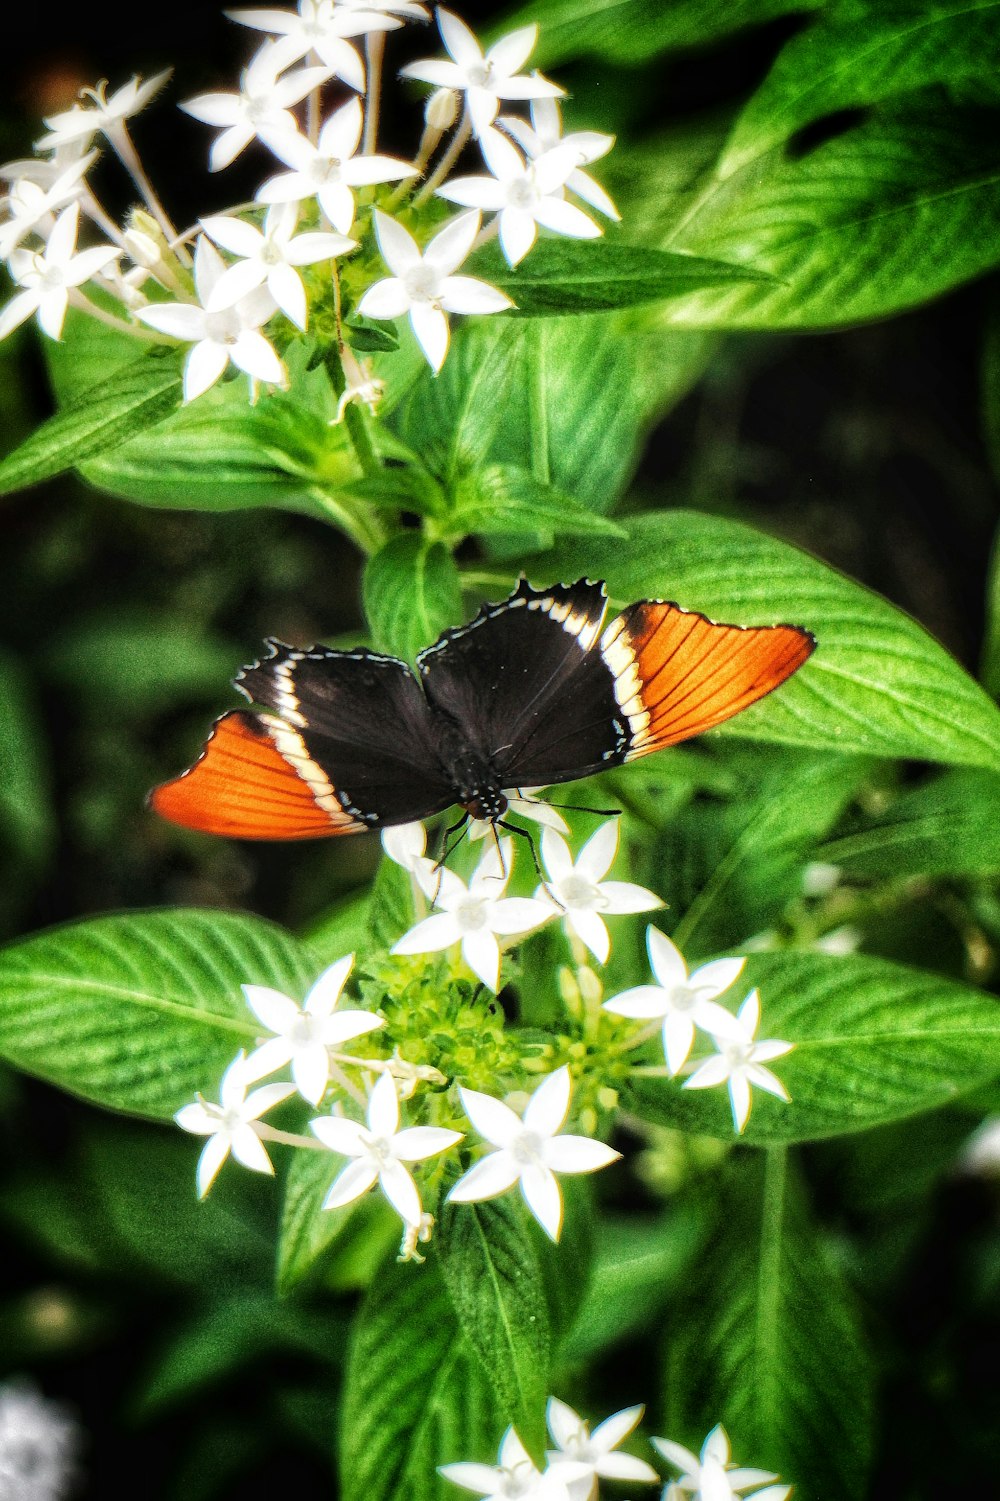 Una mariposa negra y naranja sentada sobre una flor blanca